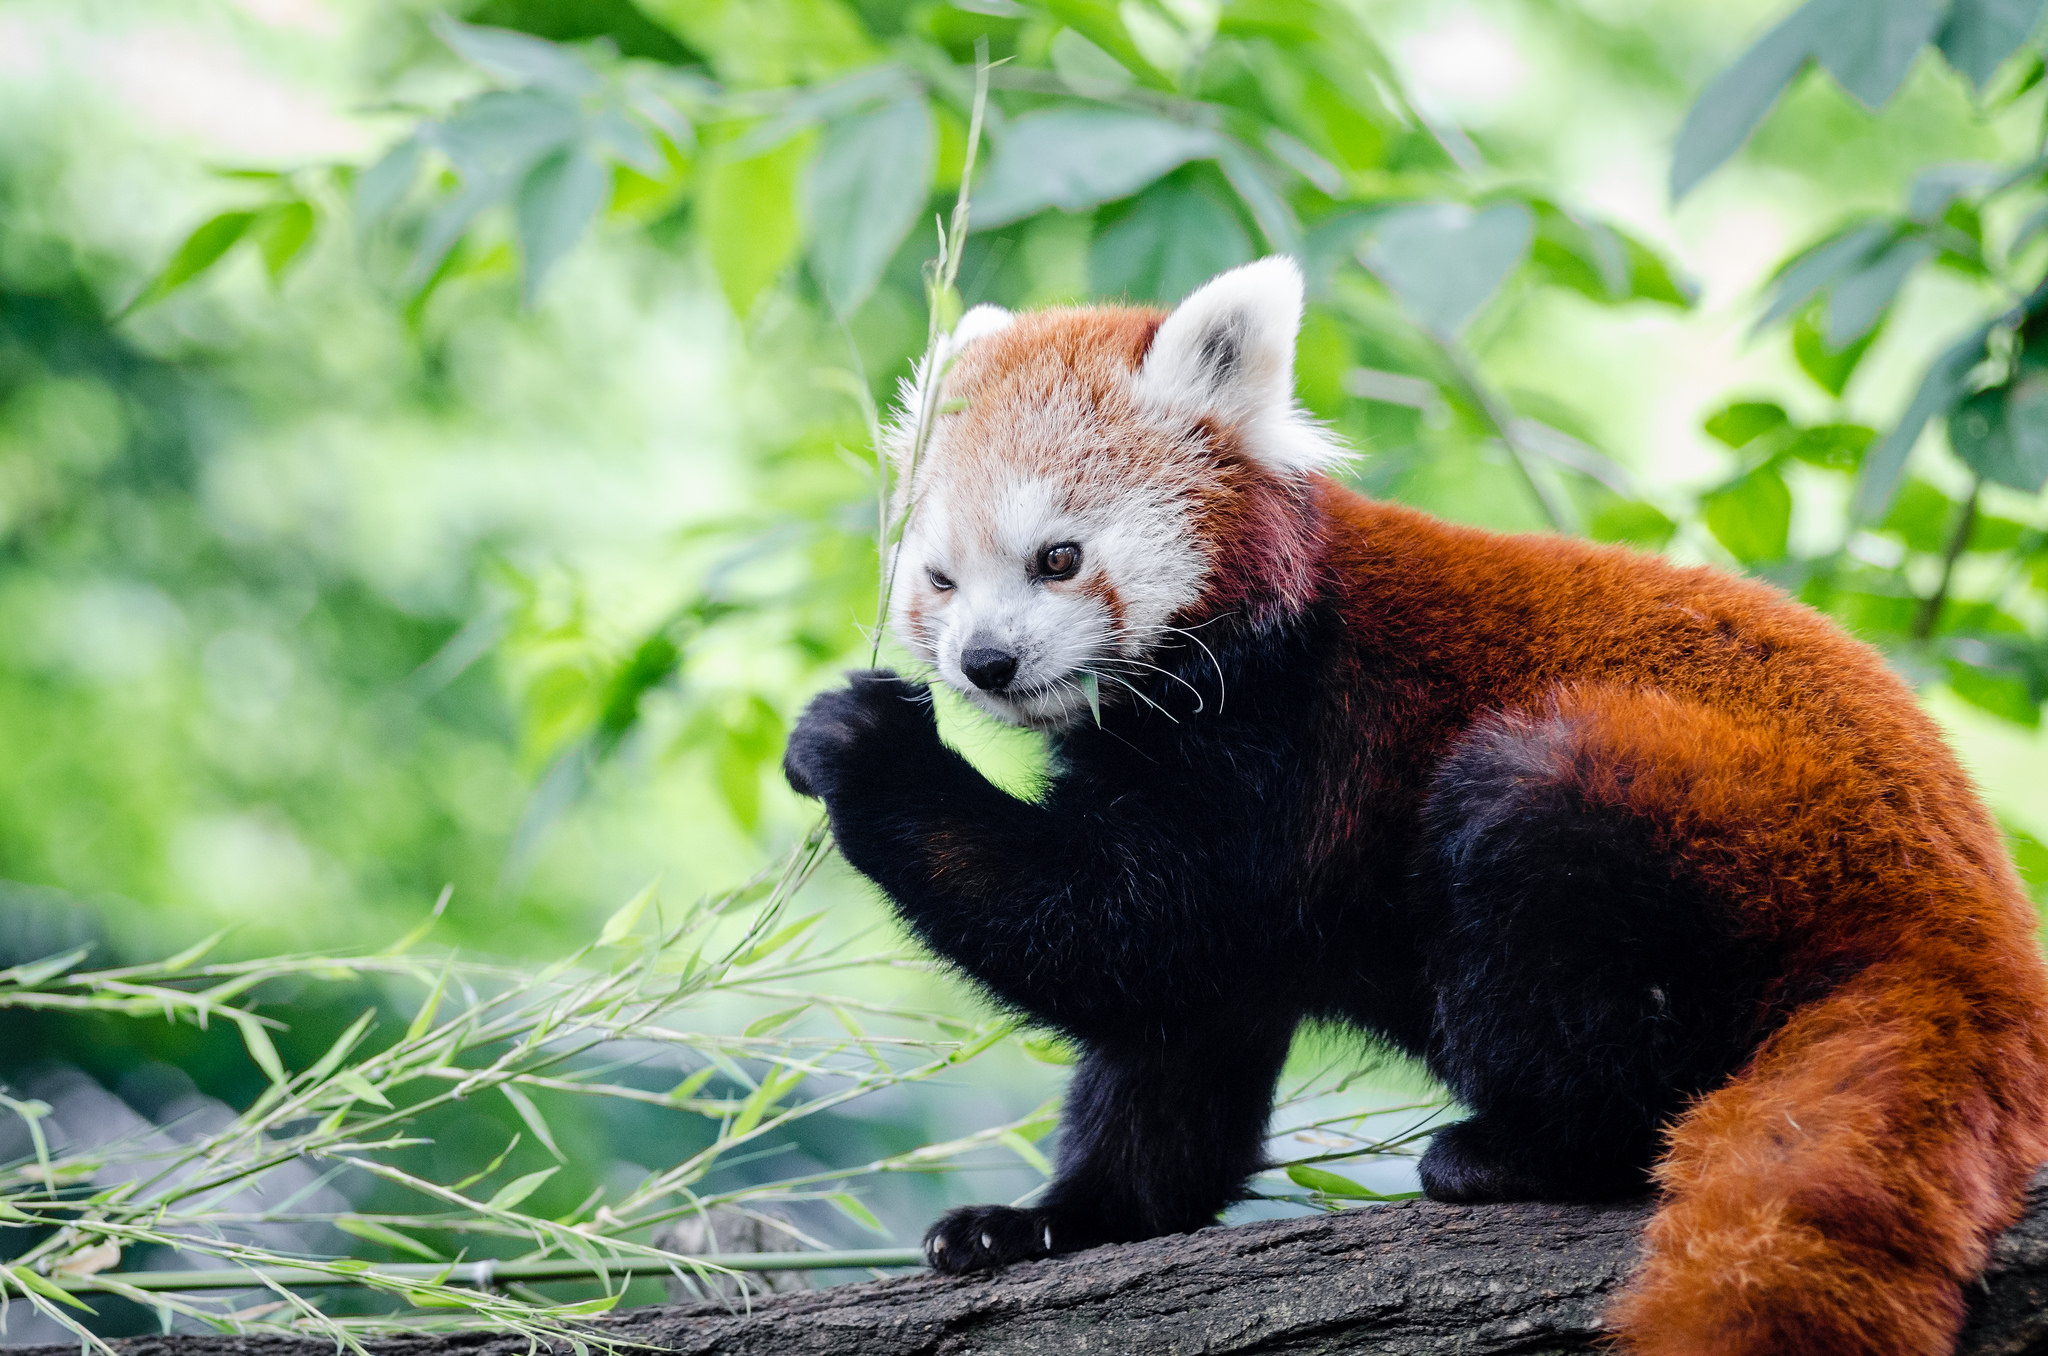 Red Panda eating bamboo by Mathias Appel